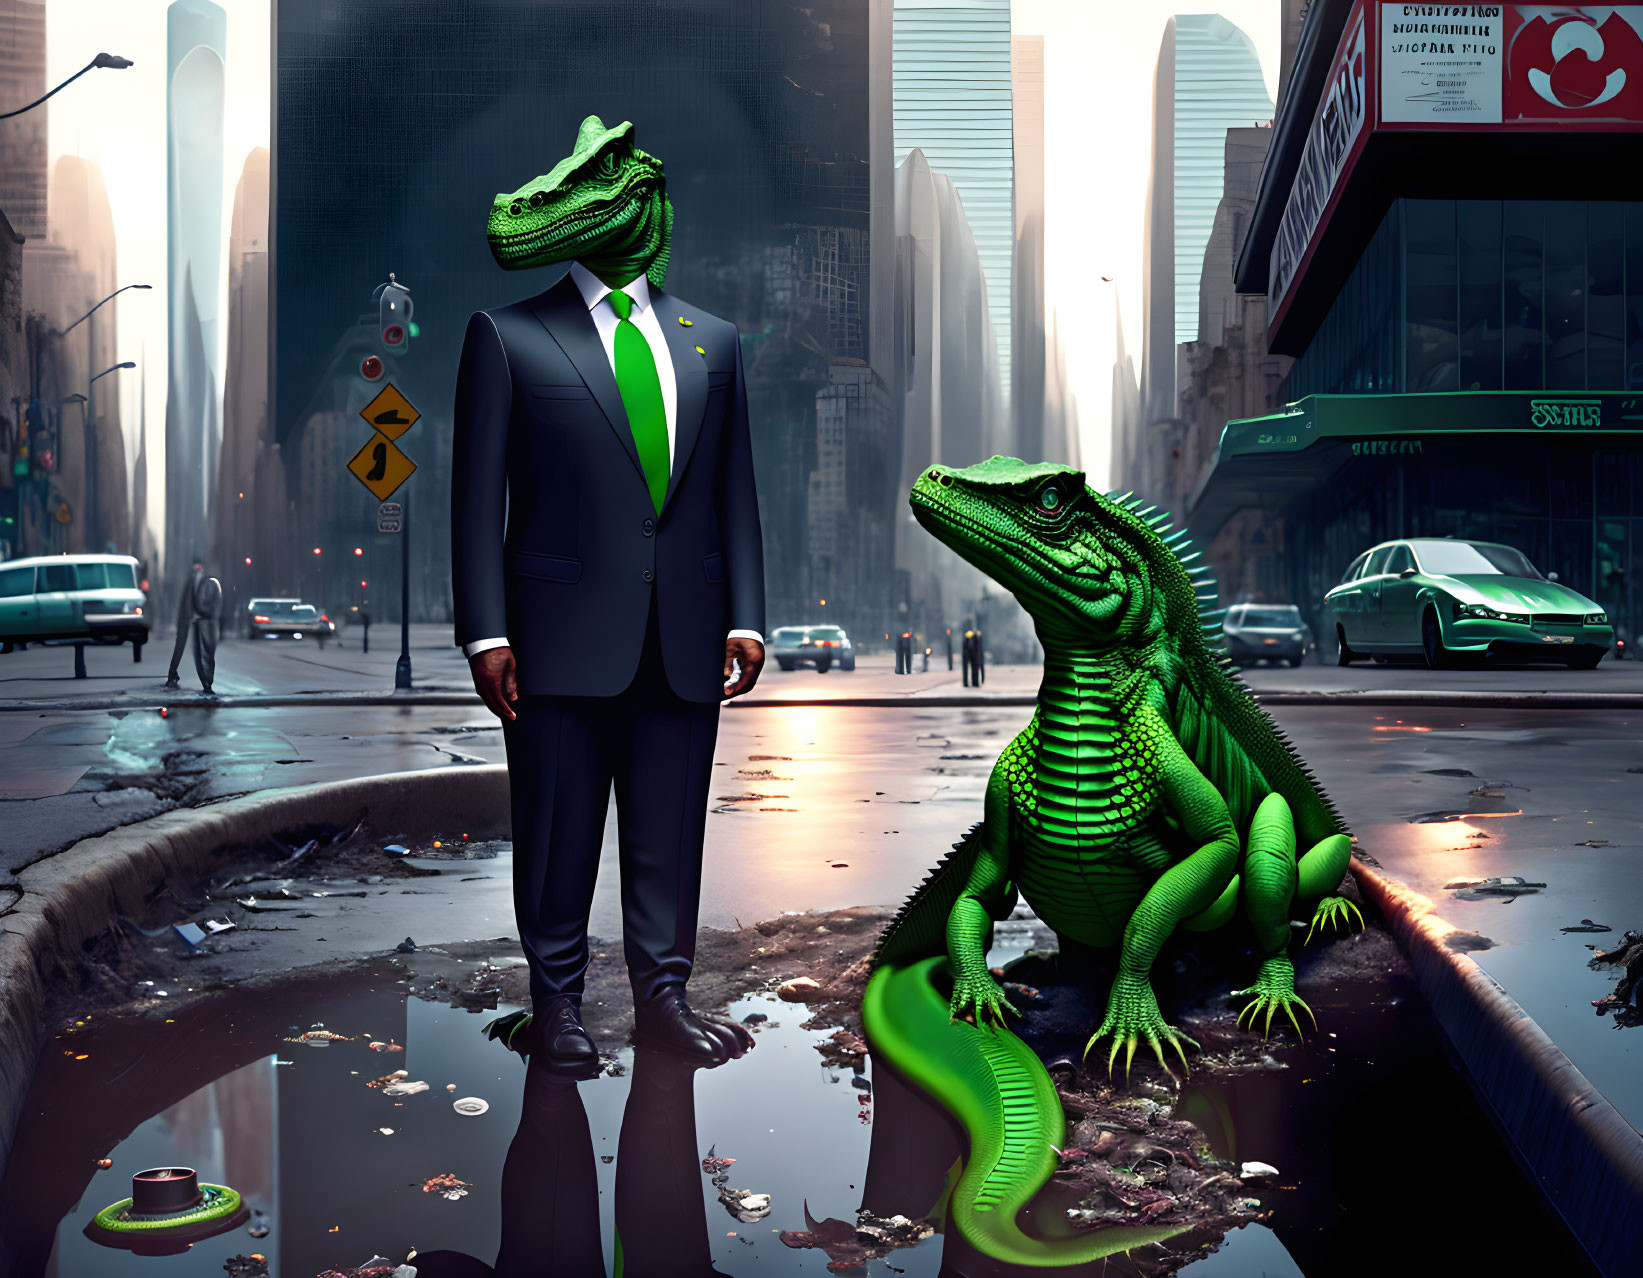 Digital artwork: Two alligators in urban attire in futuristic cityscape